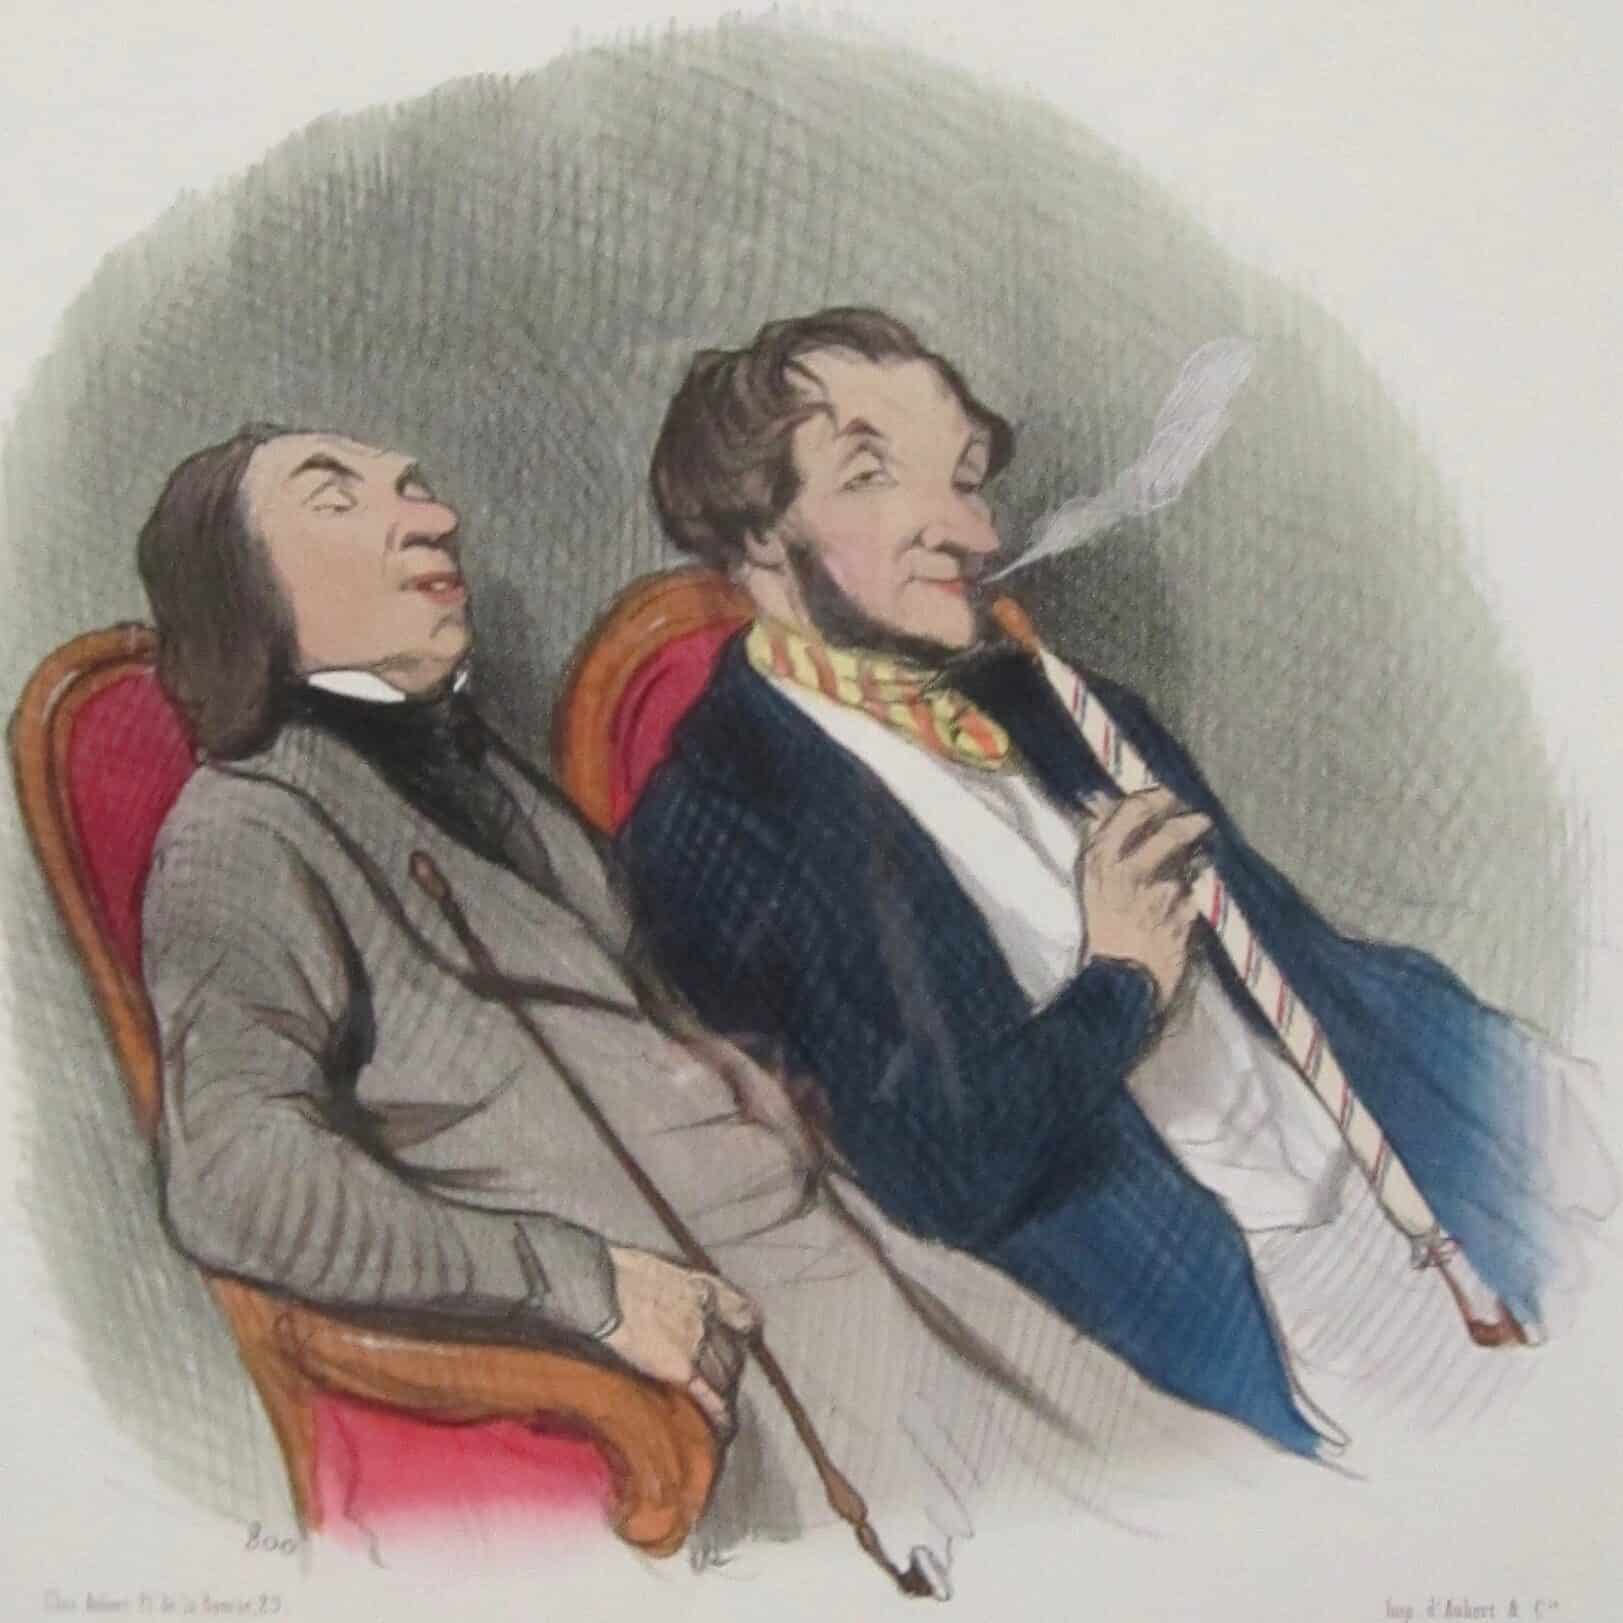 Honoré Daumier, Les Fumeurs de haschich (1845)